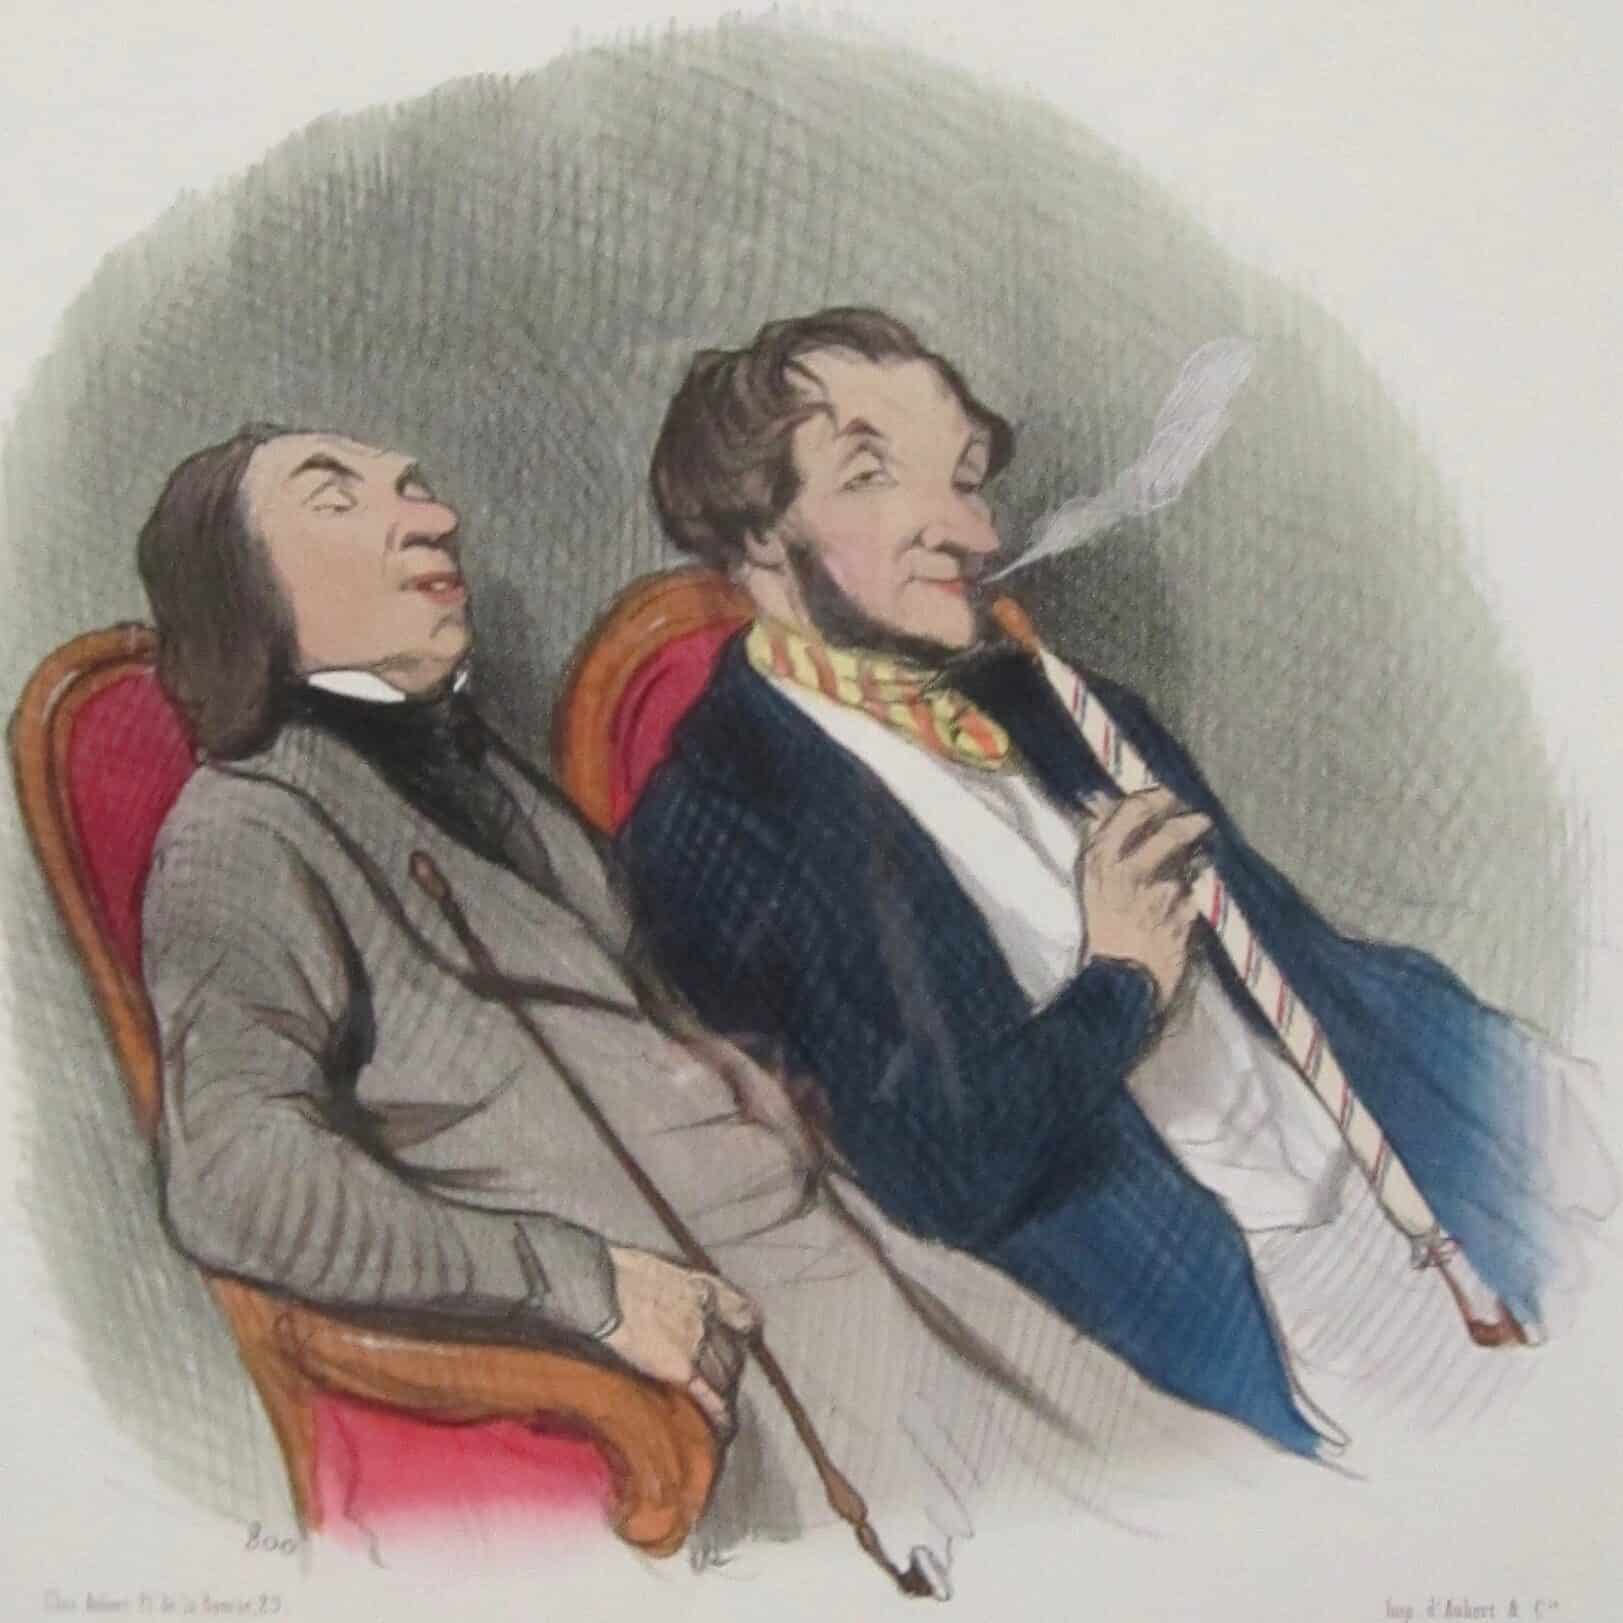 Honoré Daumier, Les Fumeurs de haschich (1845)